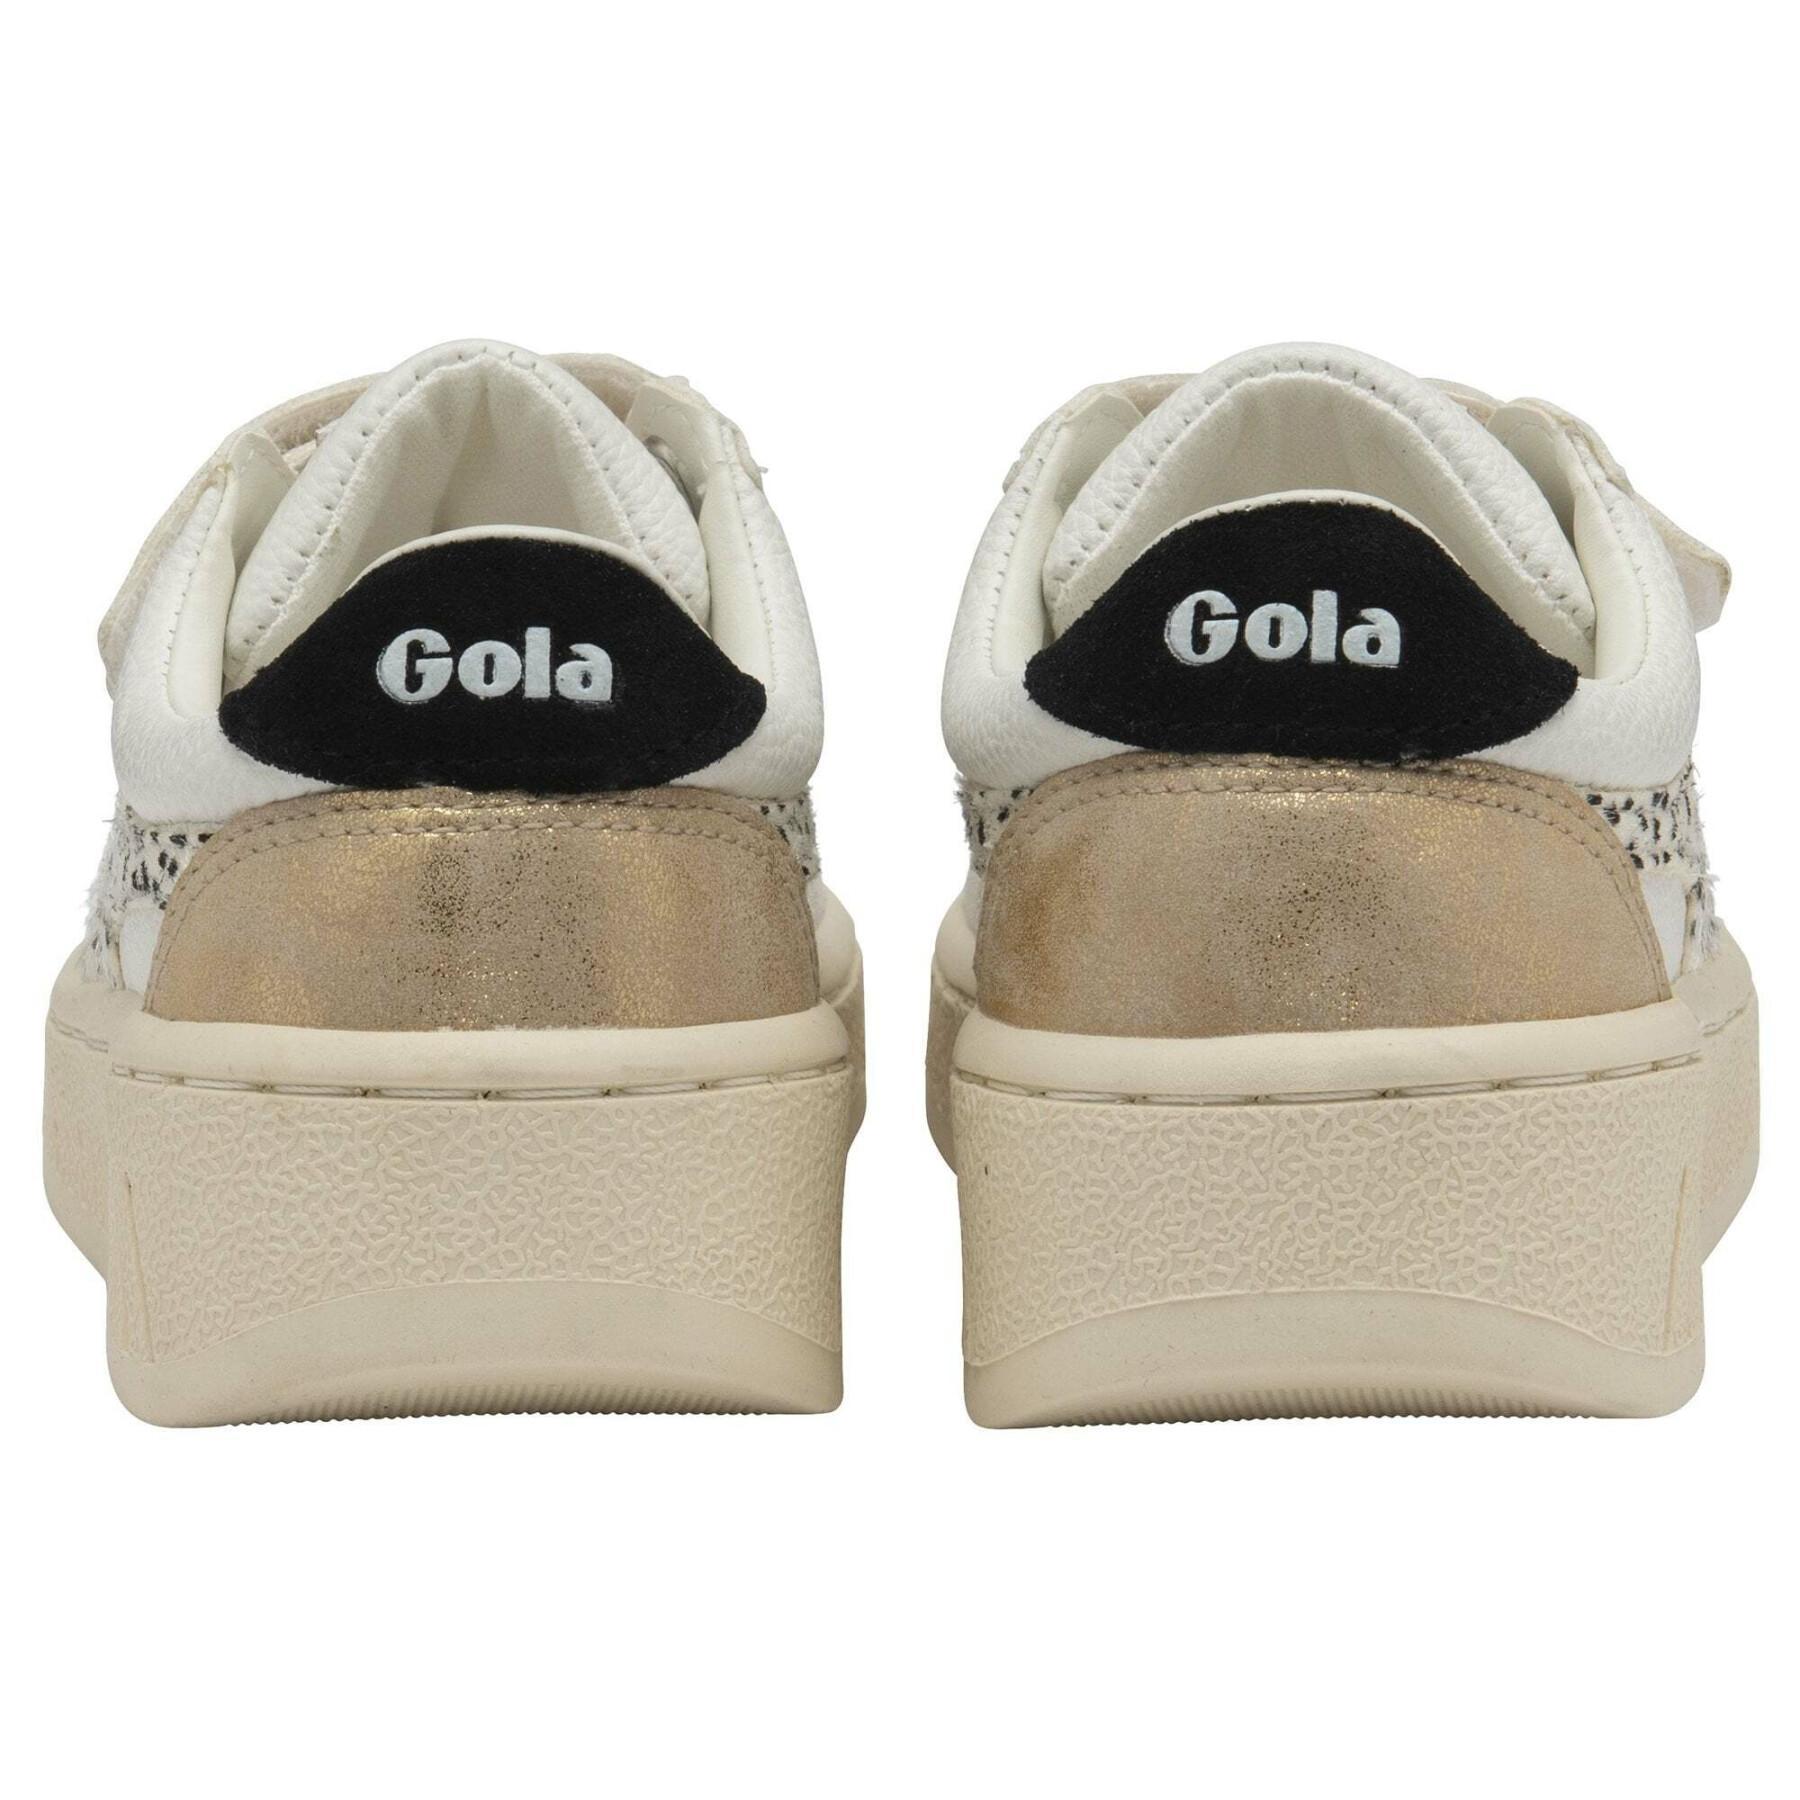 Children's sneakers Gola Grandslam Tropic Strap